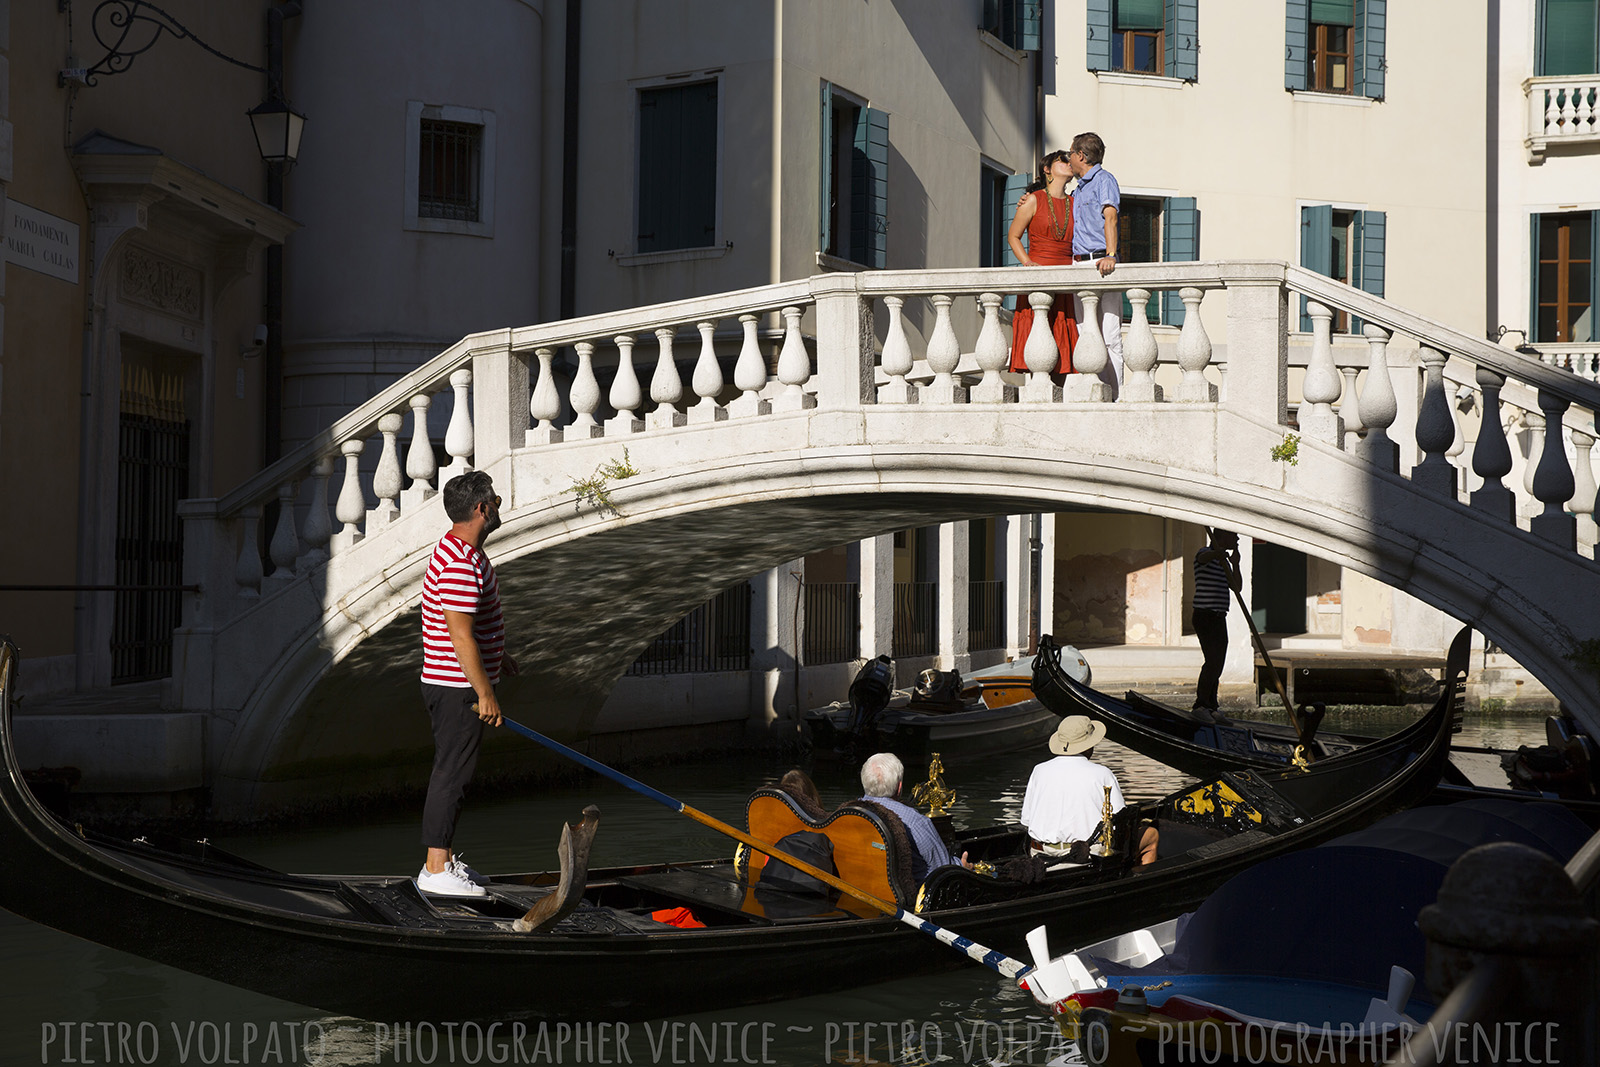 Venezia Fotografo per servizio fotografico durante una passeggiata per una coppia in vacanza ~ Fotografo Venezia servizio foto vacanza